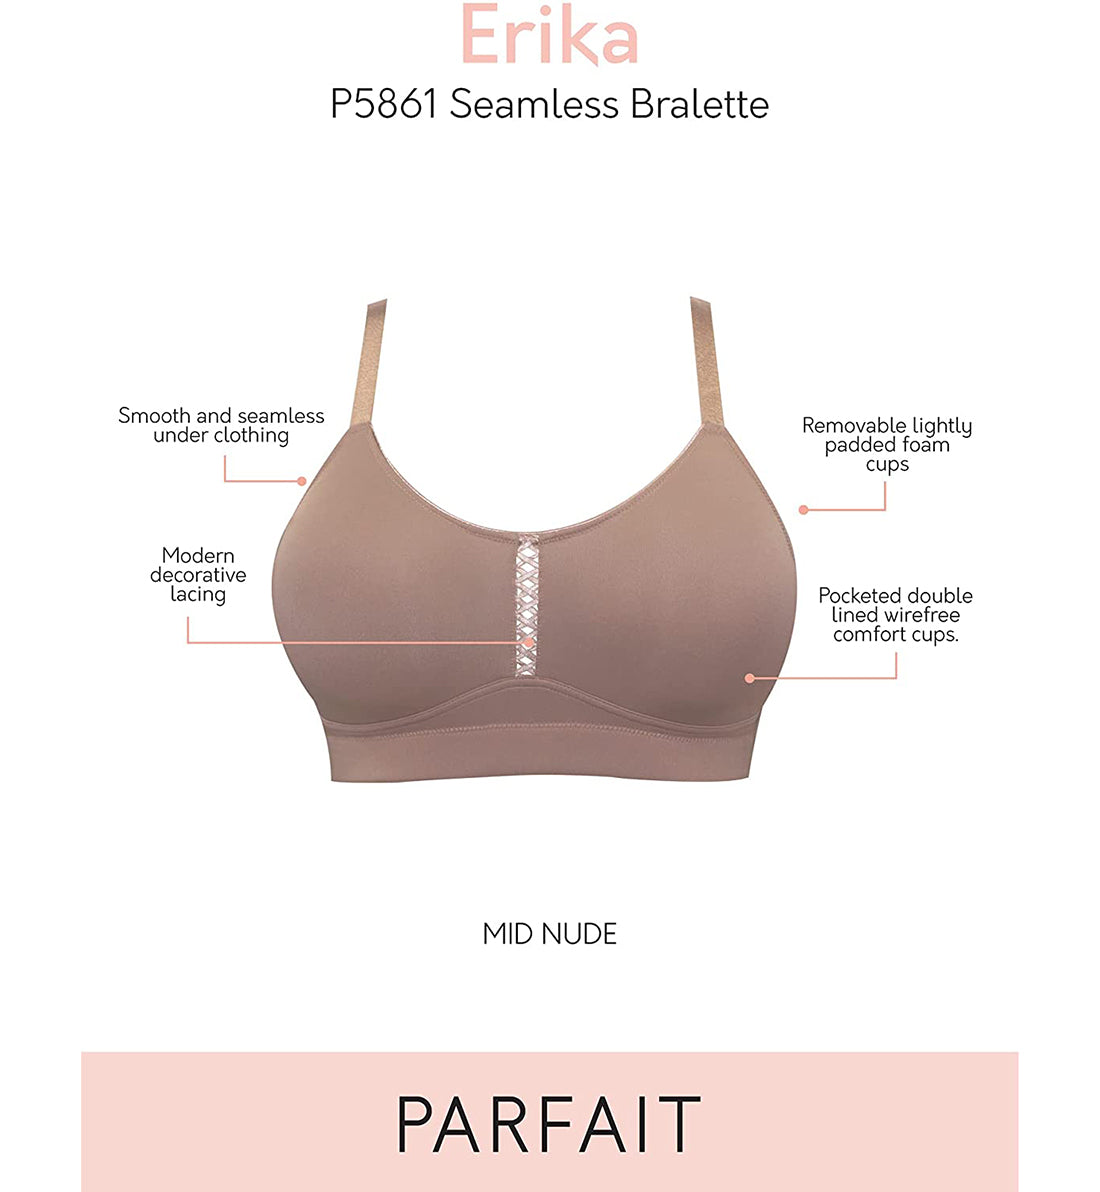 Parfait Erika Seamless Bralette (P5861),32C,Mid Nude - Mid Nude,32C